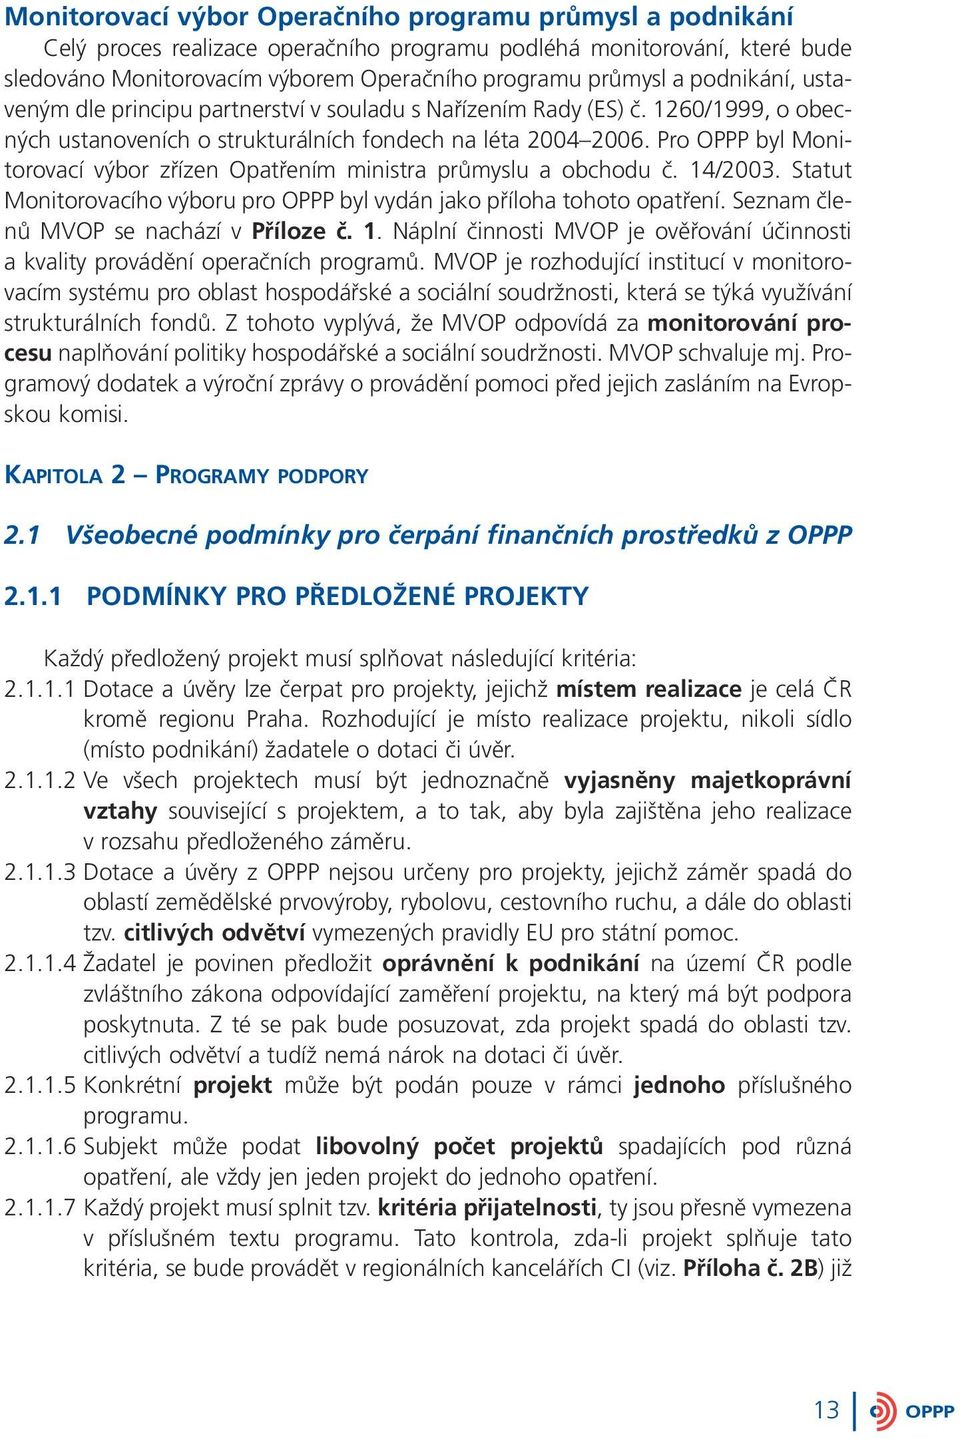 Pro OPPP byl Monitorovací výbor zřízen Opatřením ministra průmyslu a obchodu č. 14/2003. Statut Monitorovacího výboru pro OPPP byl vydán jako příloha tohoto opatření.